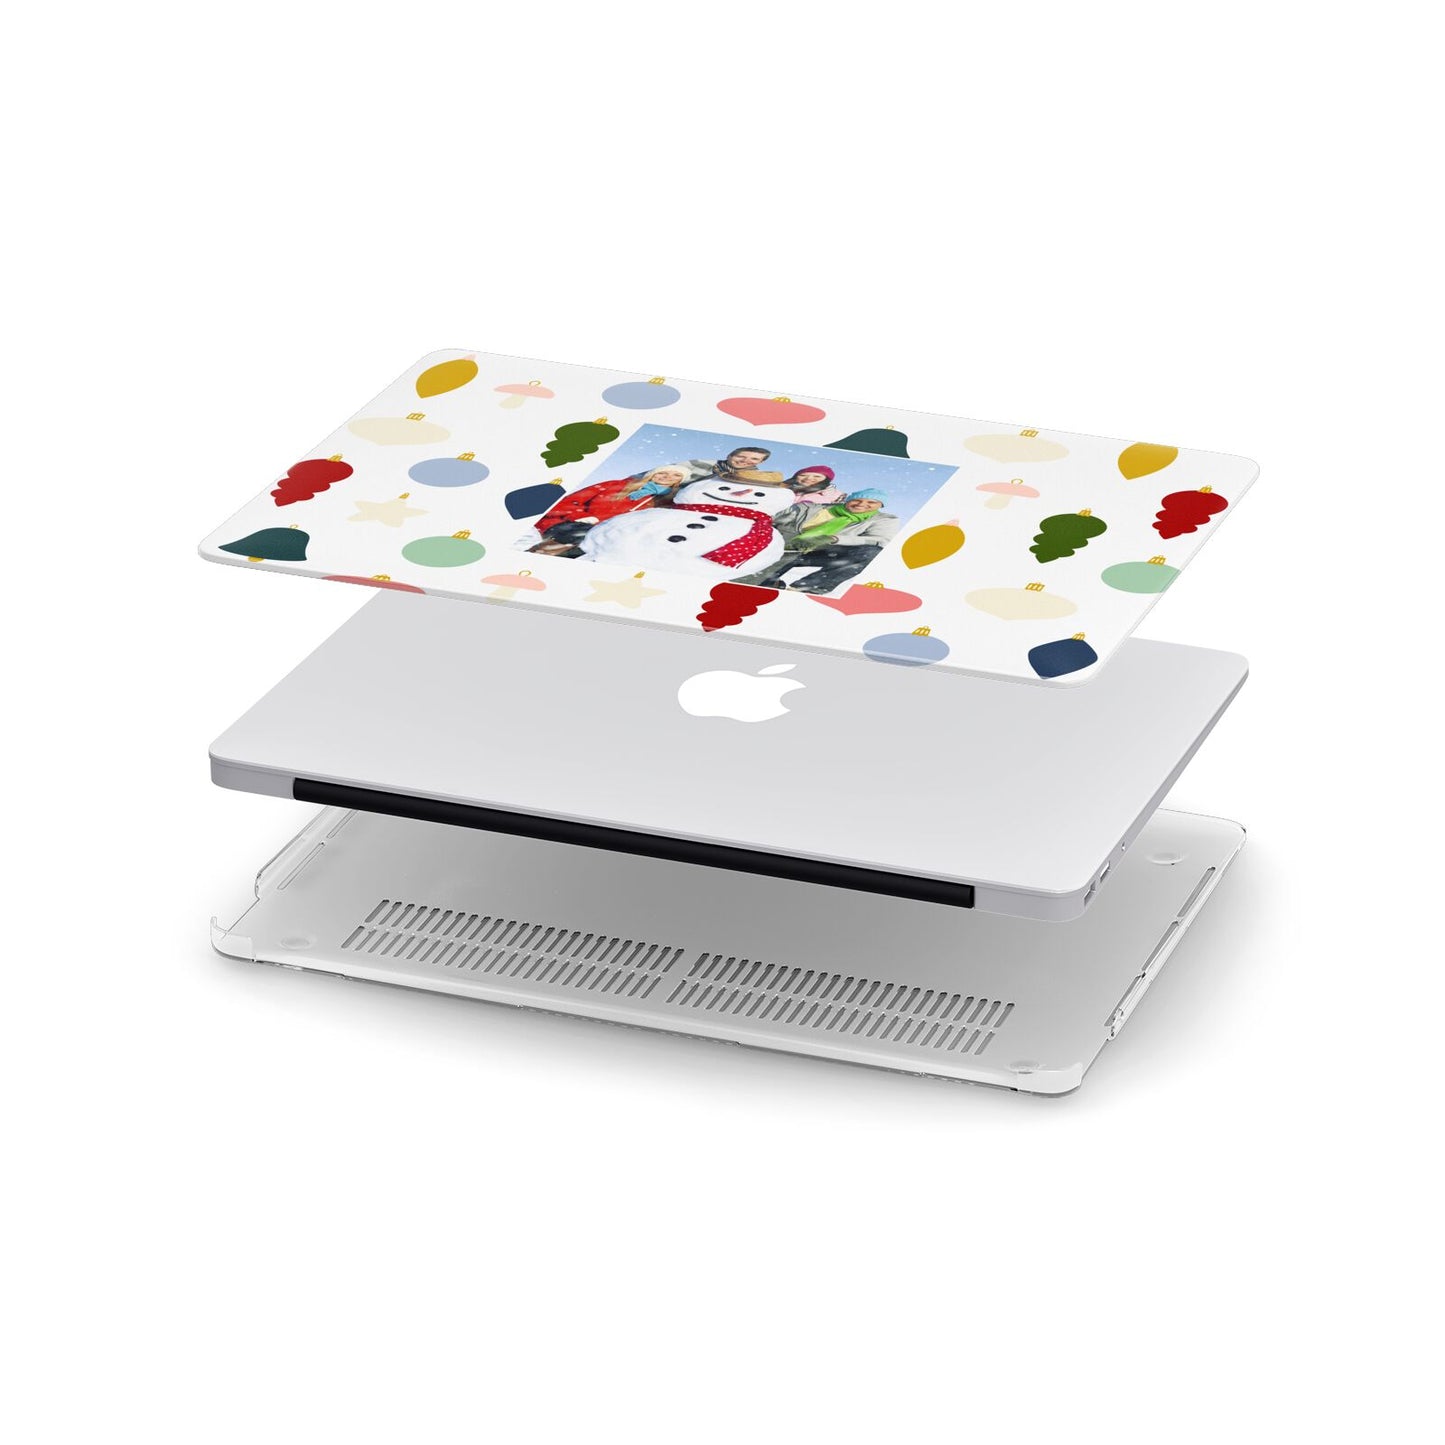 Personalised Christmas Baubles Apple MacBook Case in Detail